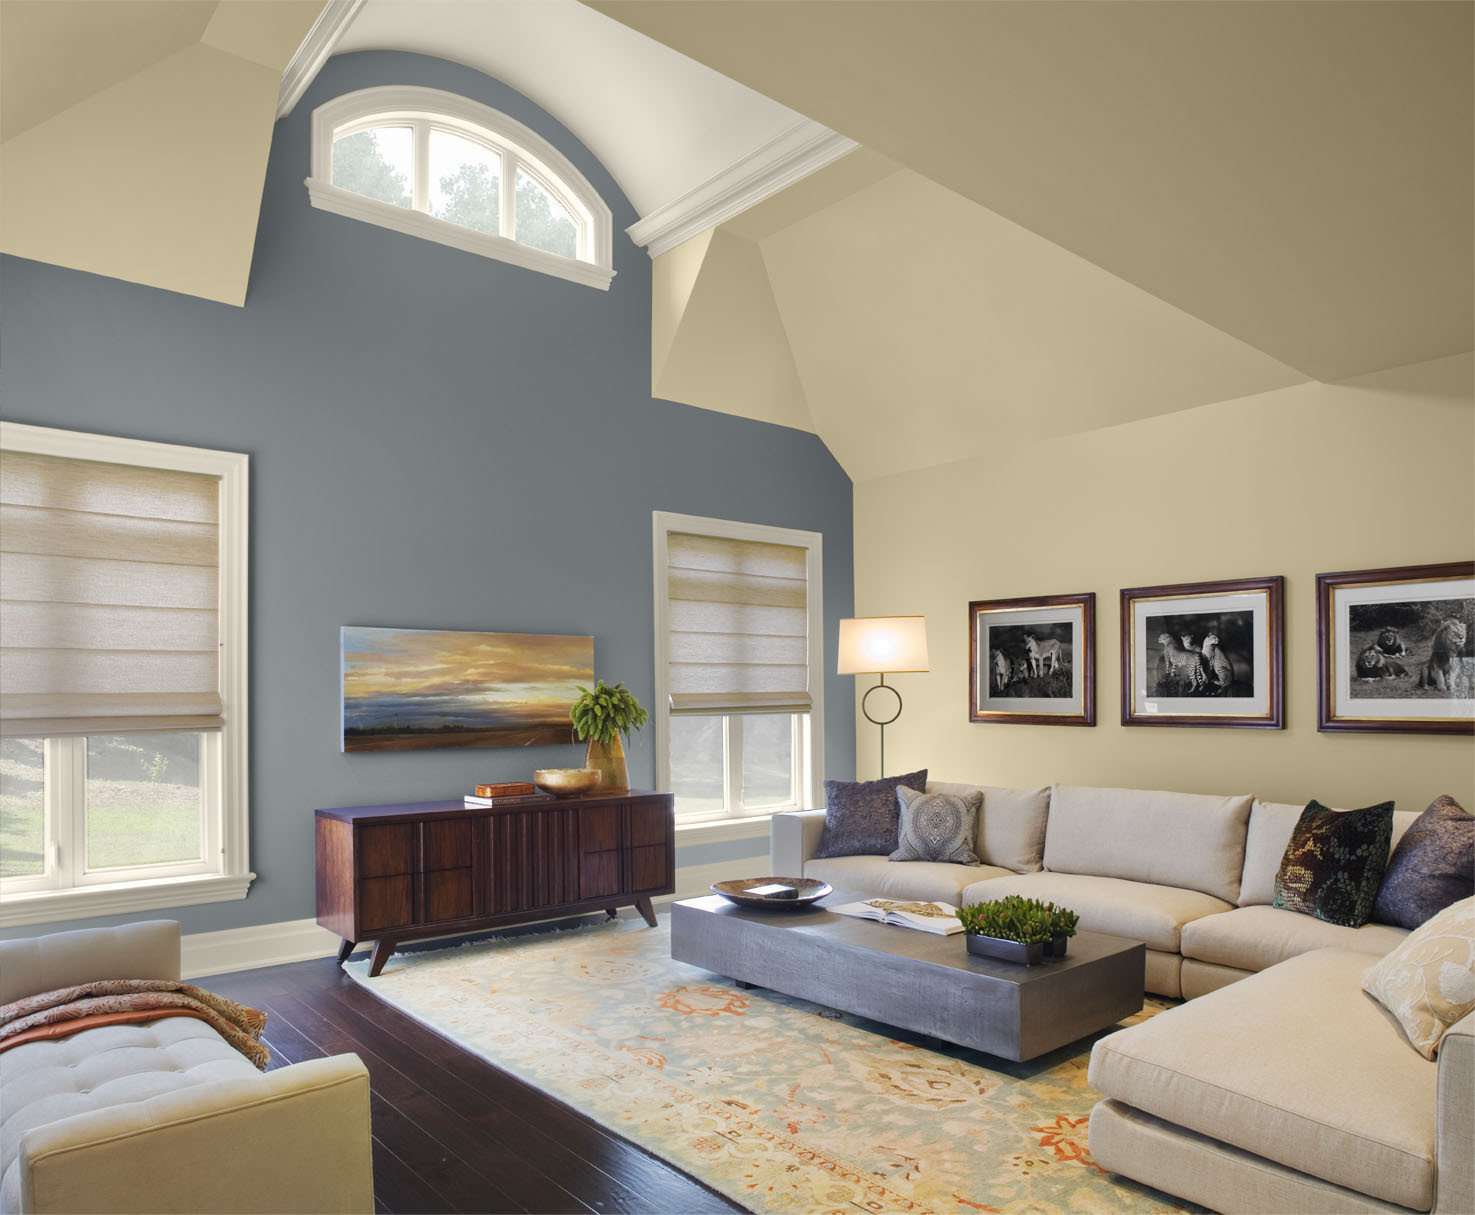 Paint Scheme For Living Room
 30 Excellent Living Room Paint Color Ideas SloDive